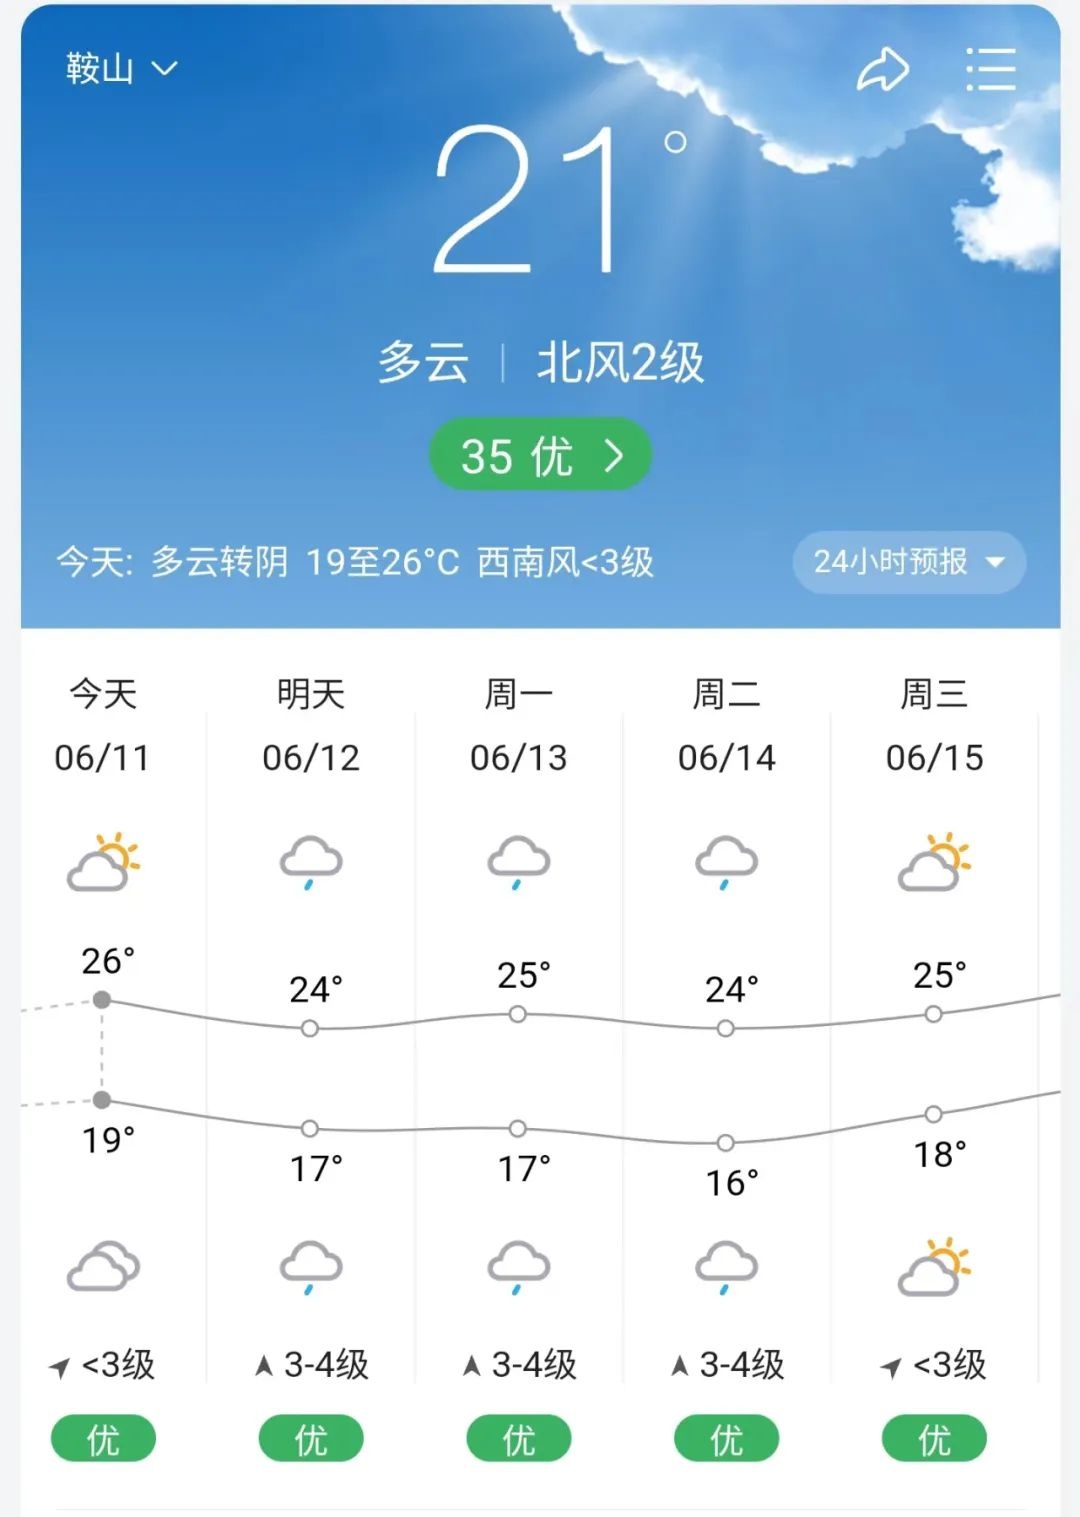 鞍山天气预报图片